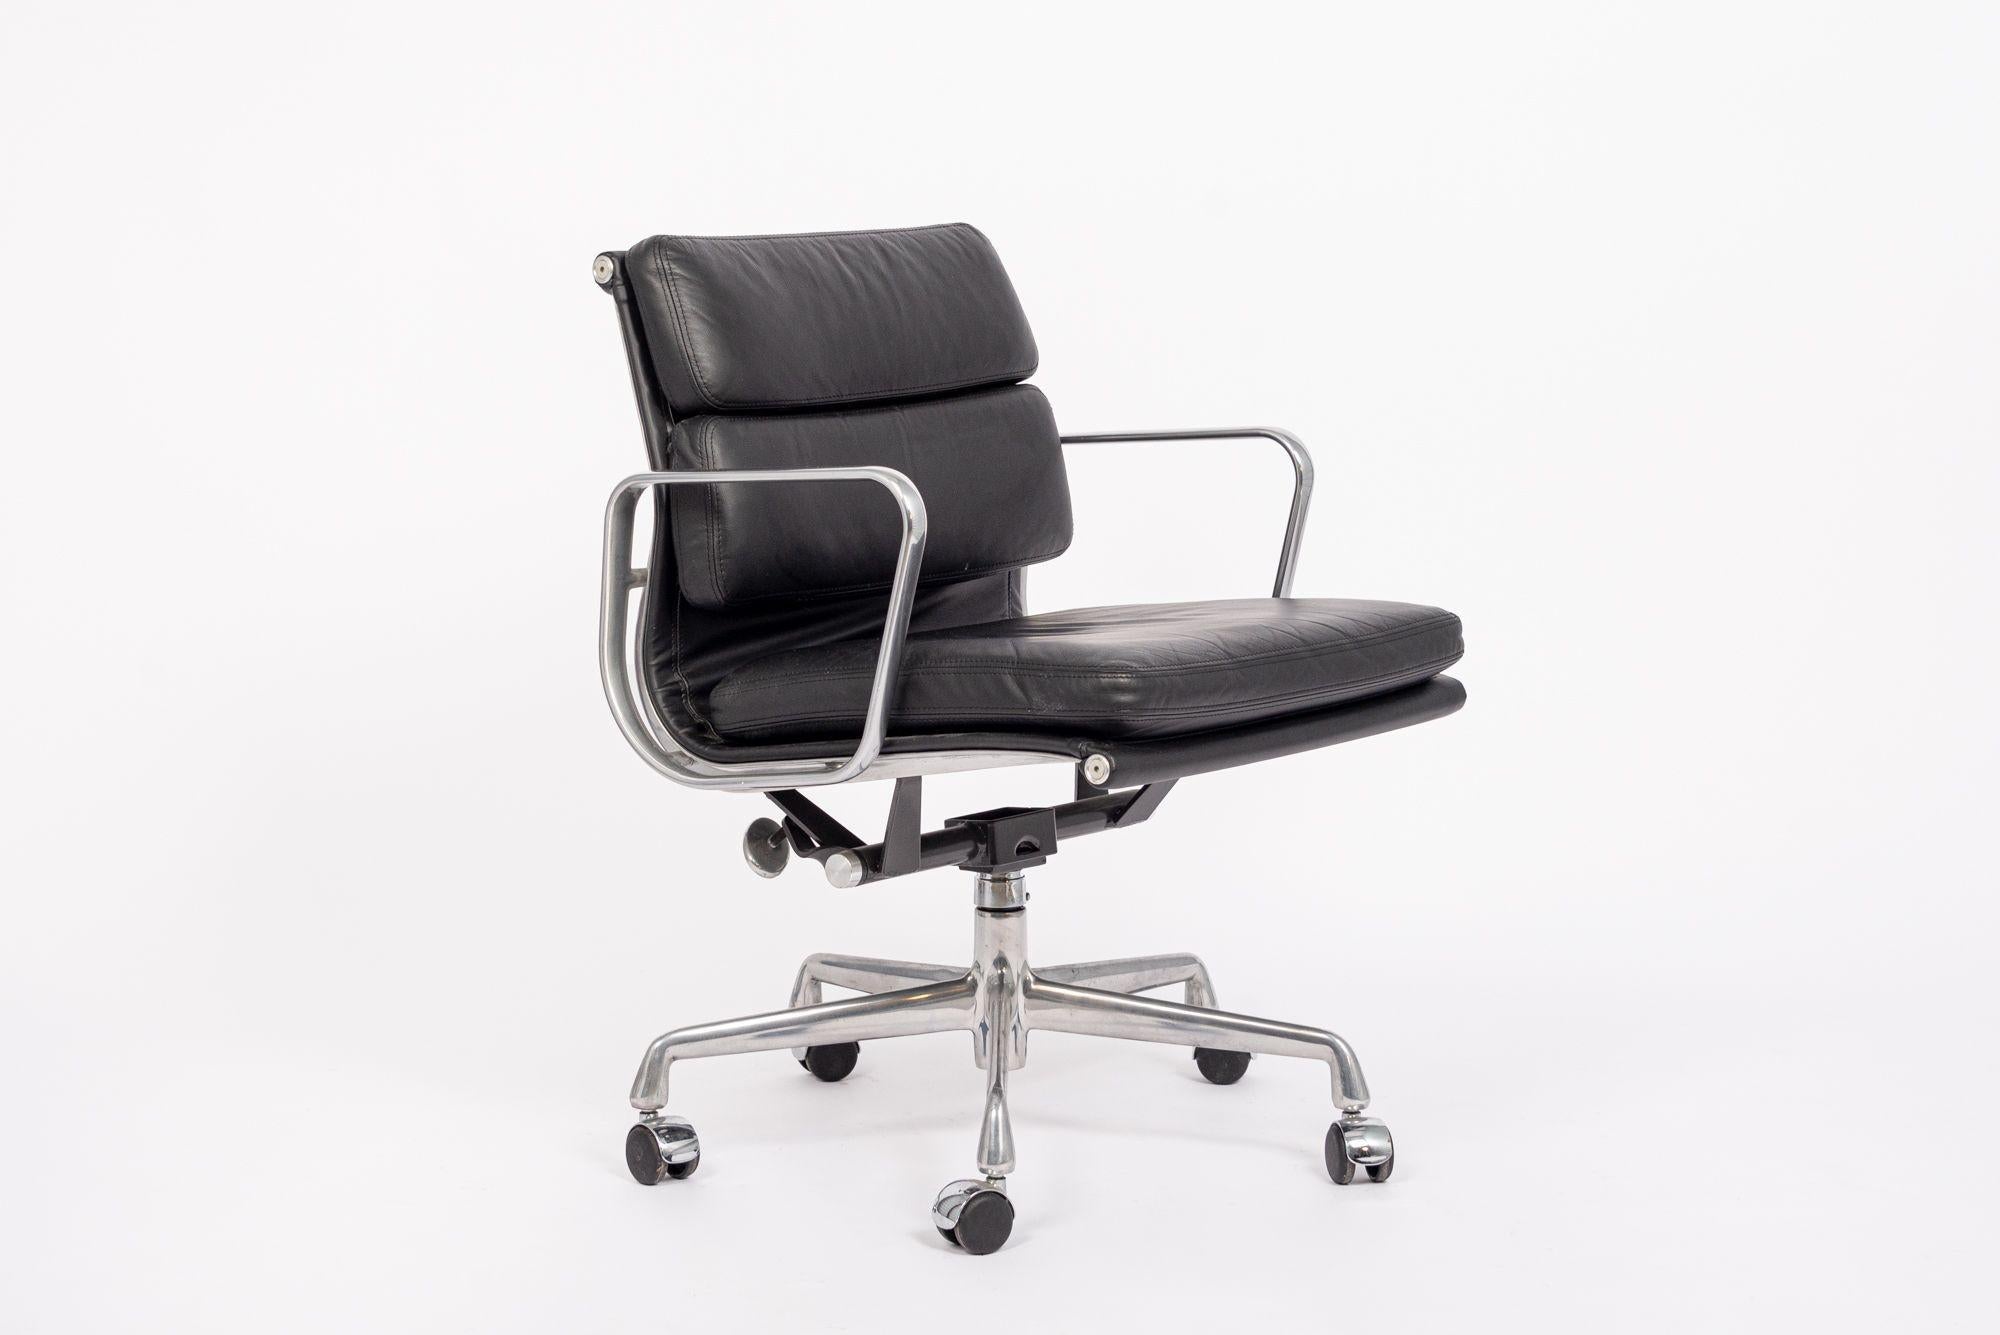 Dieser authentische Eames for Herman Miller Soft Pad Management Height Bürostuhl aus schwarzem Leder der Aluminum Group Collection'S wurde im Jahr 2001 hergestellt. Dieser klassische, moderne Bürostuhl aus der Mitte des Jahrhunderts wurde 1969 von